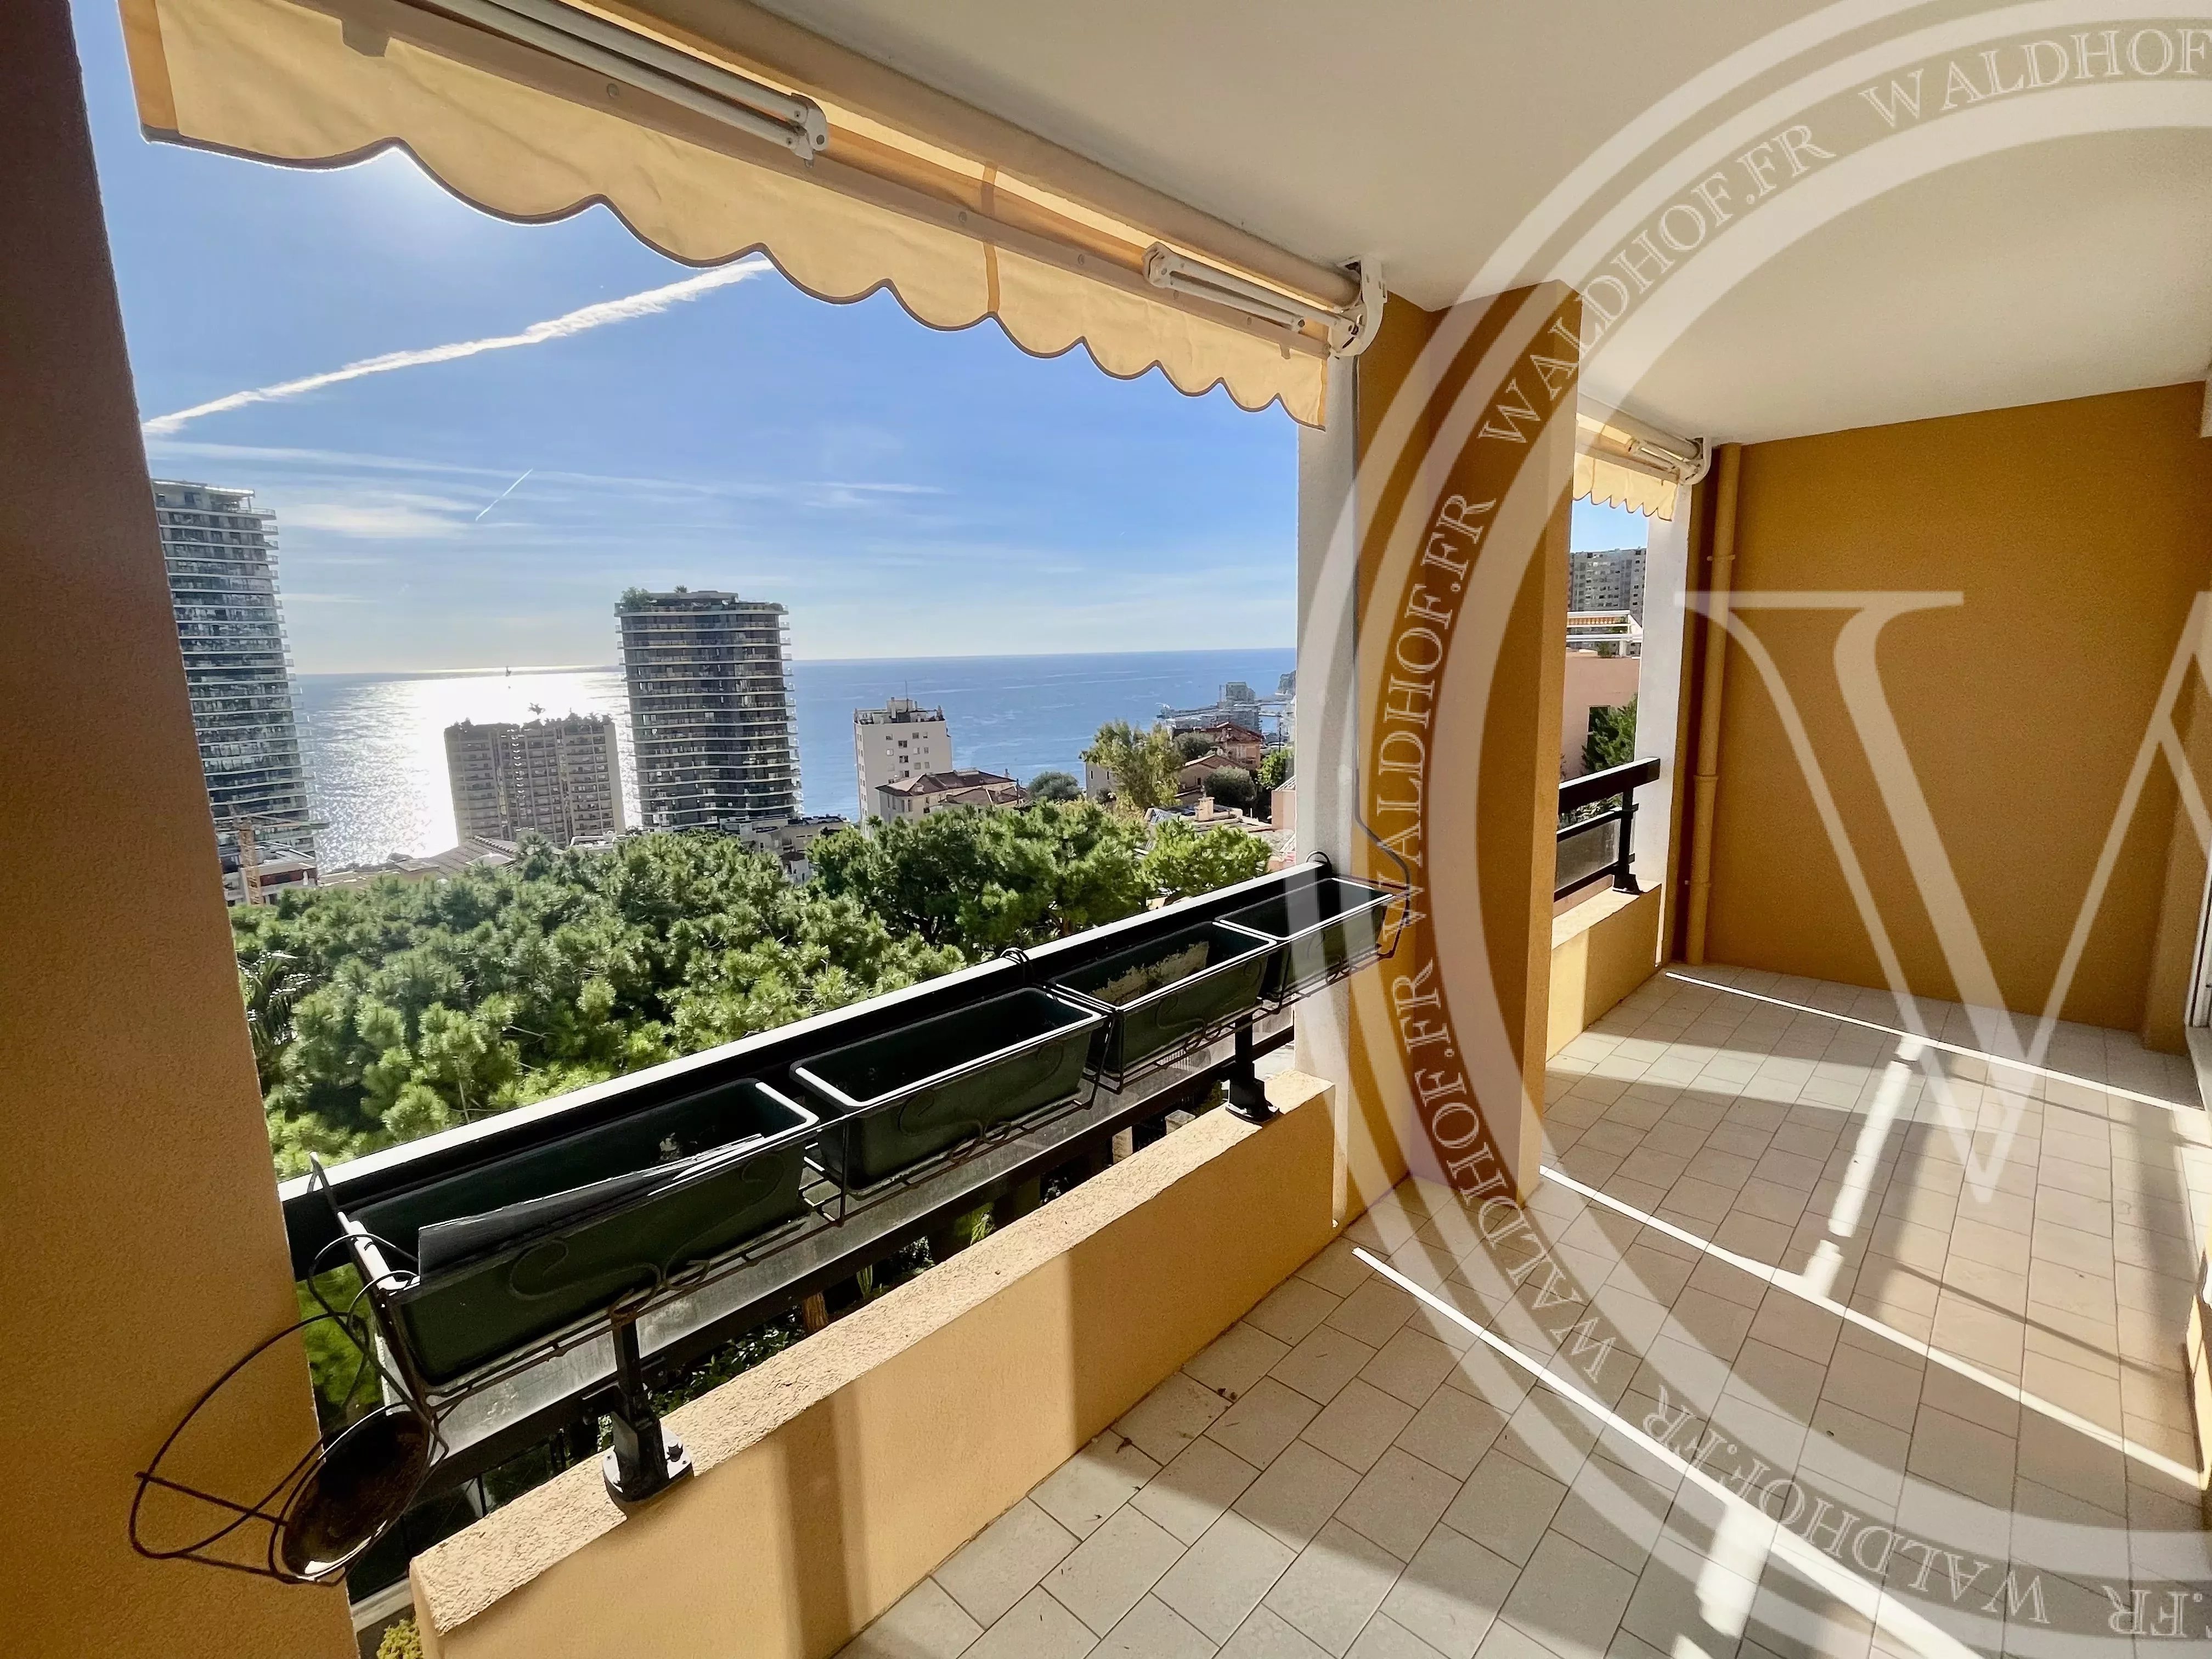 Appartement de 3 chambres récemment rénové avec vue sur la mer près de Monaco